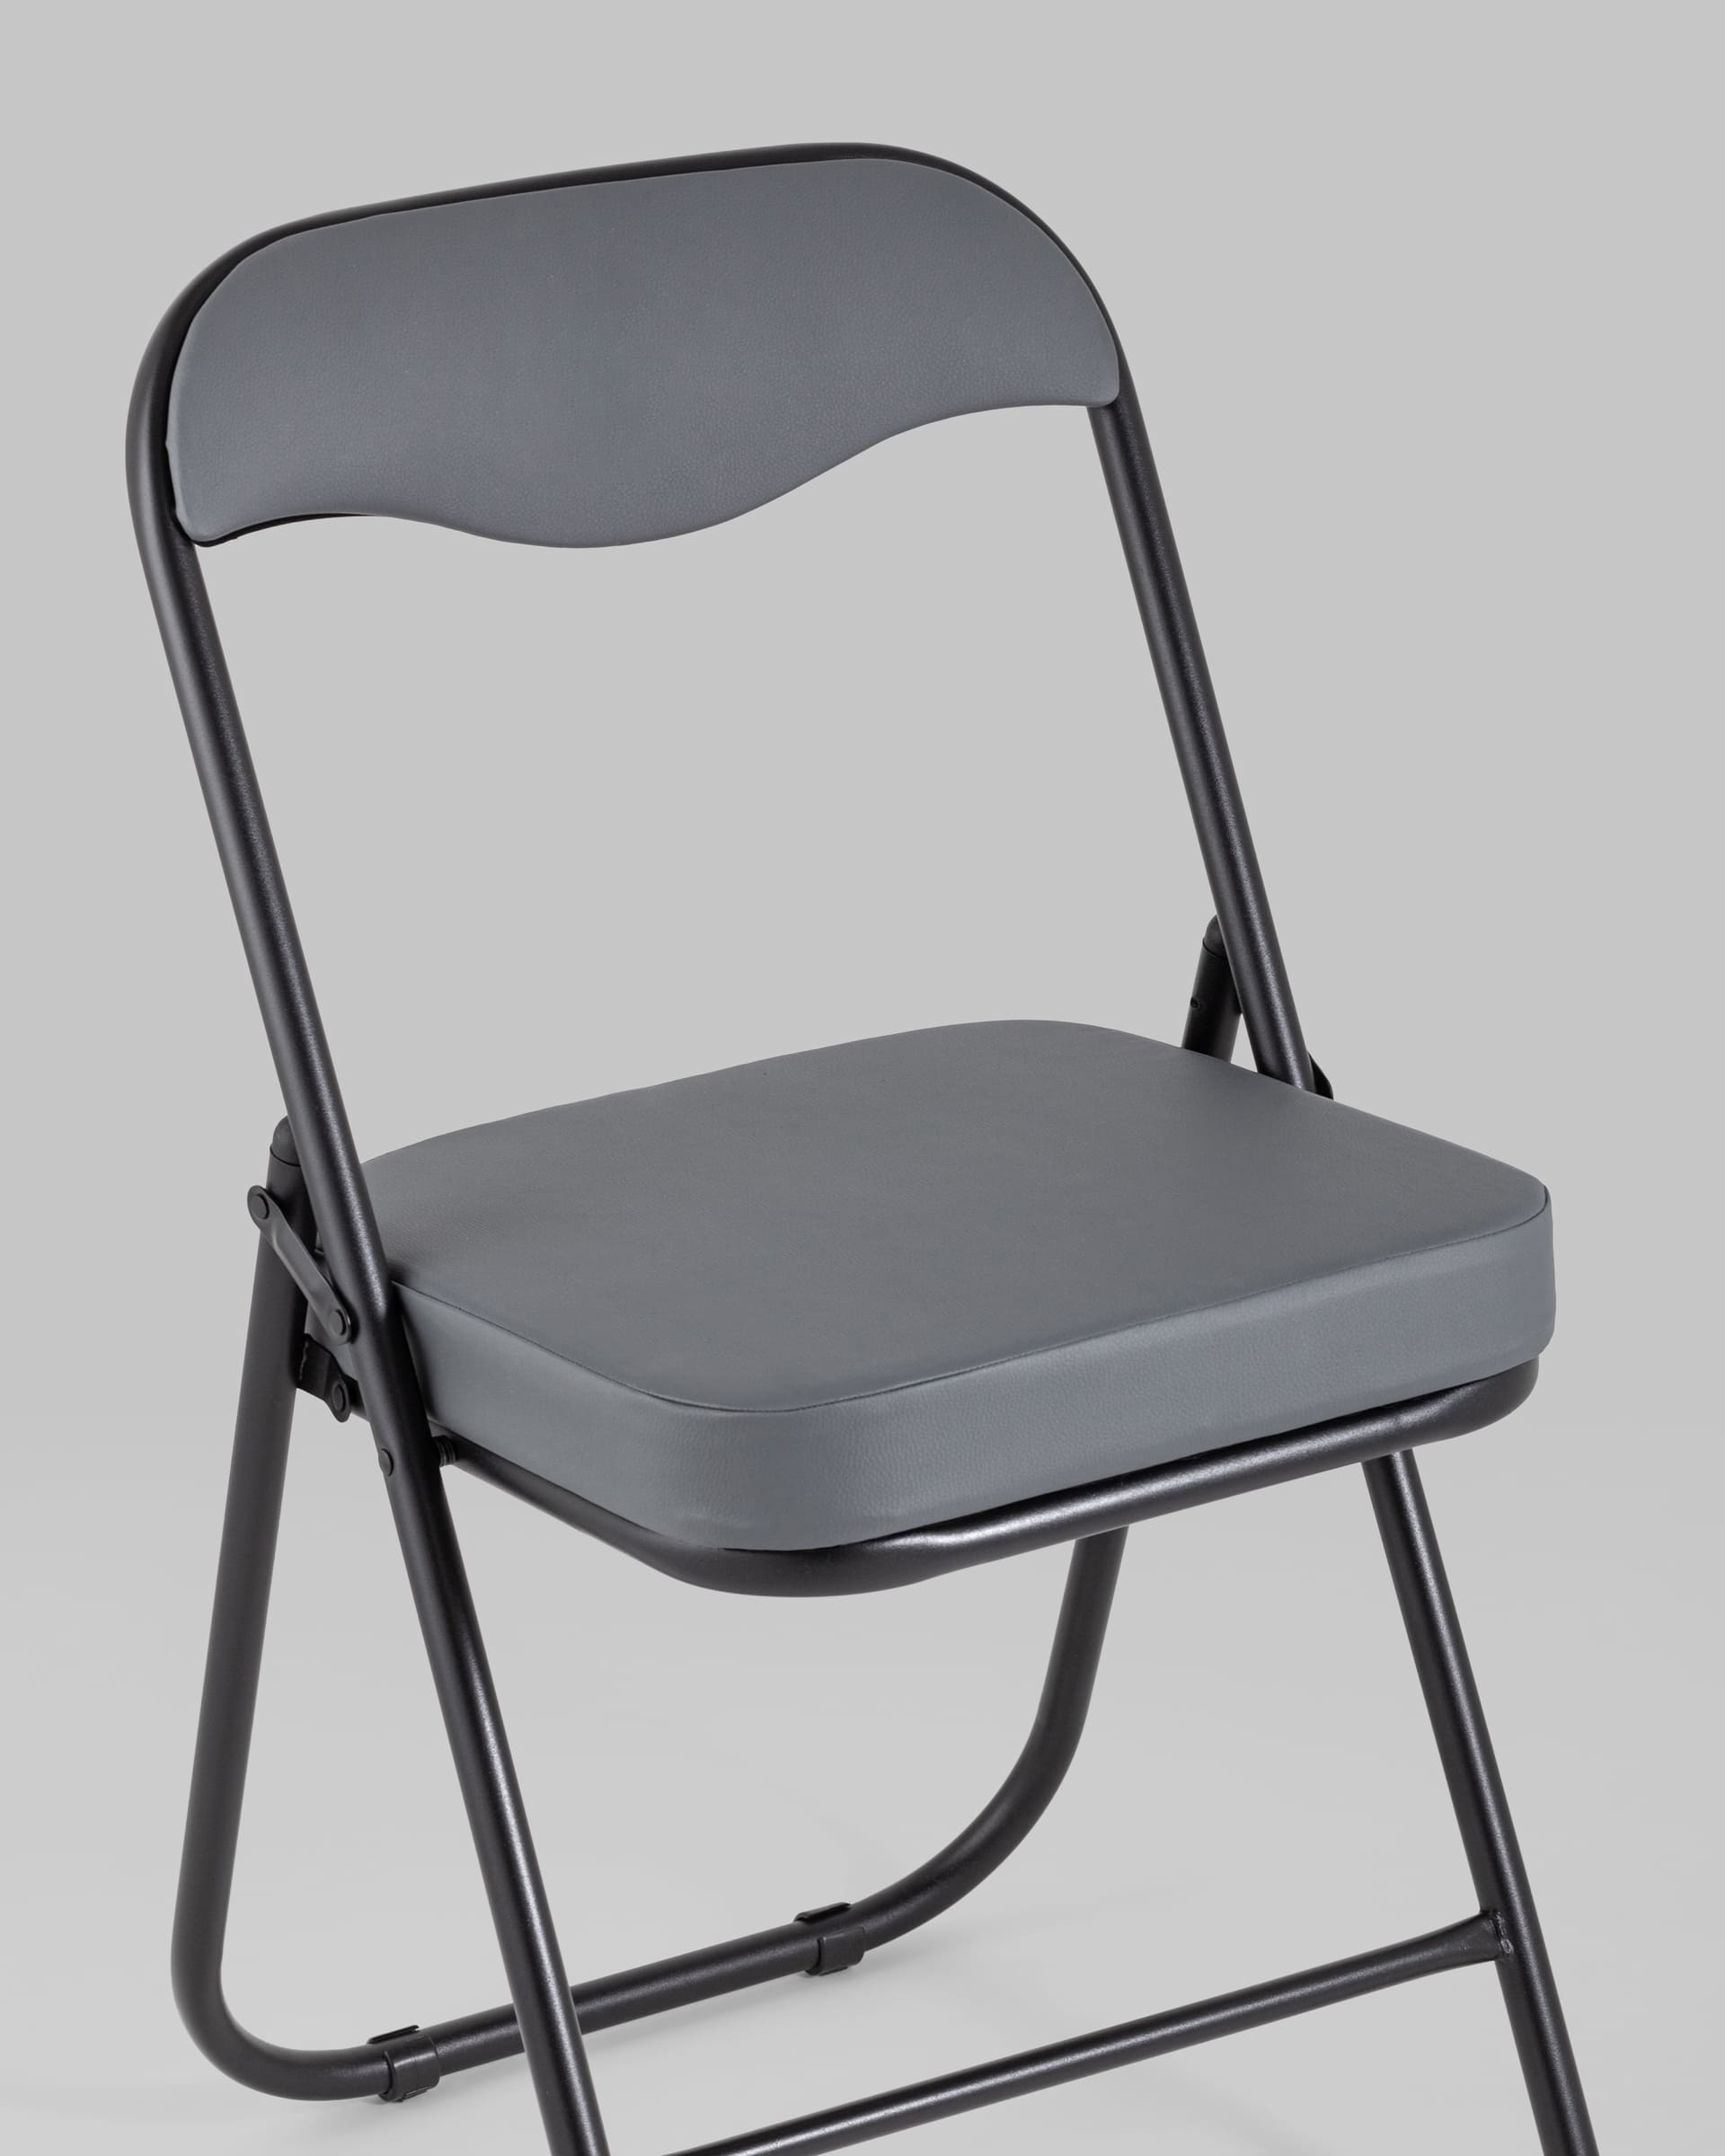 Складные стулья со спинкой для отдыха